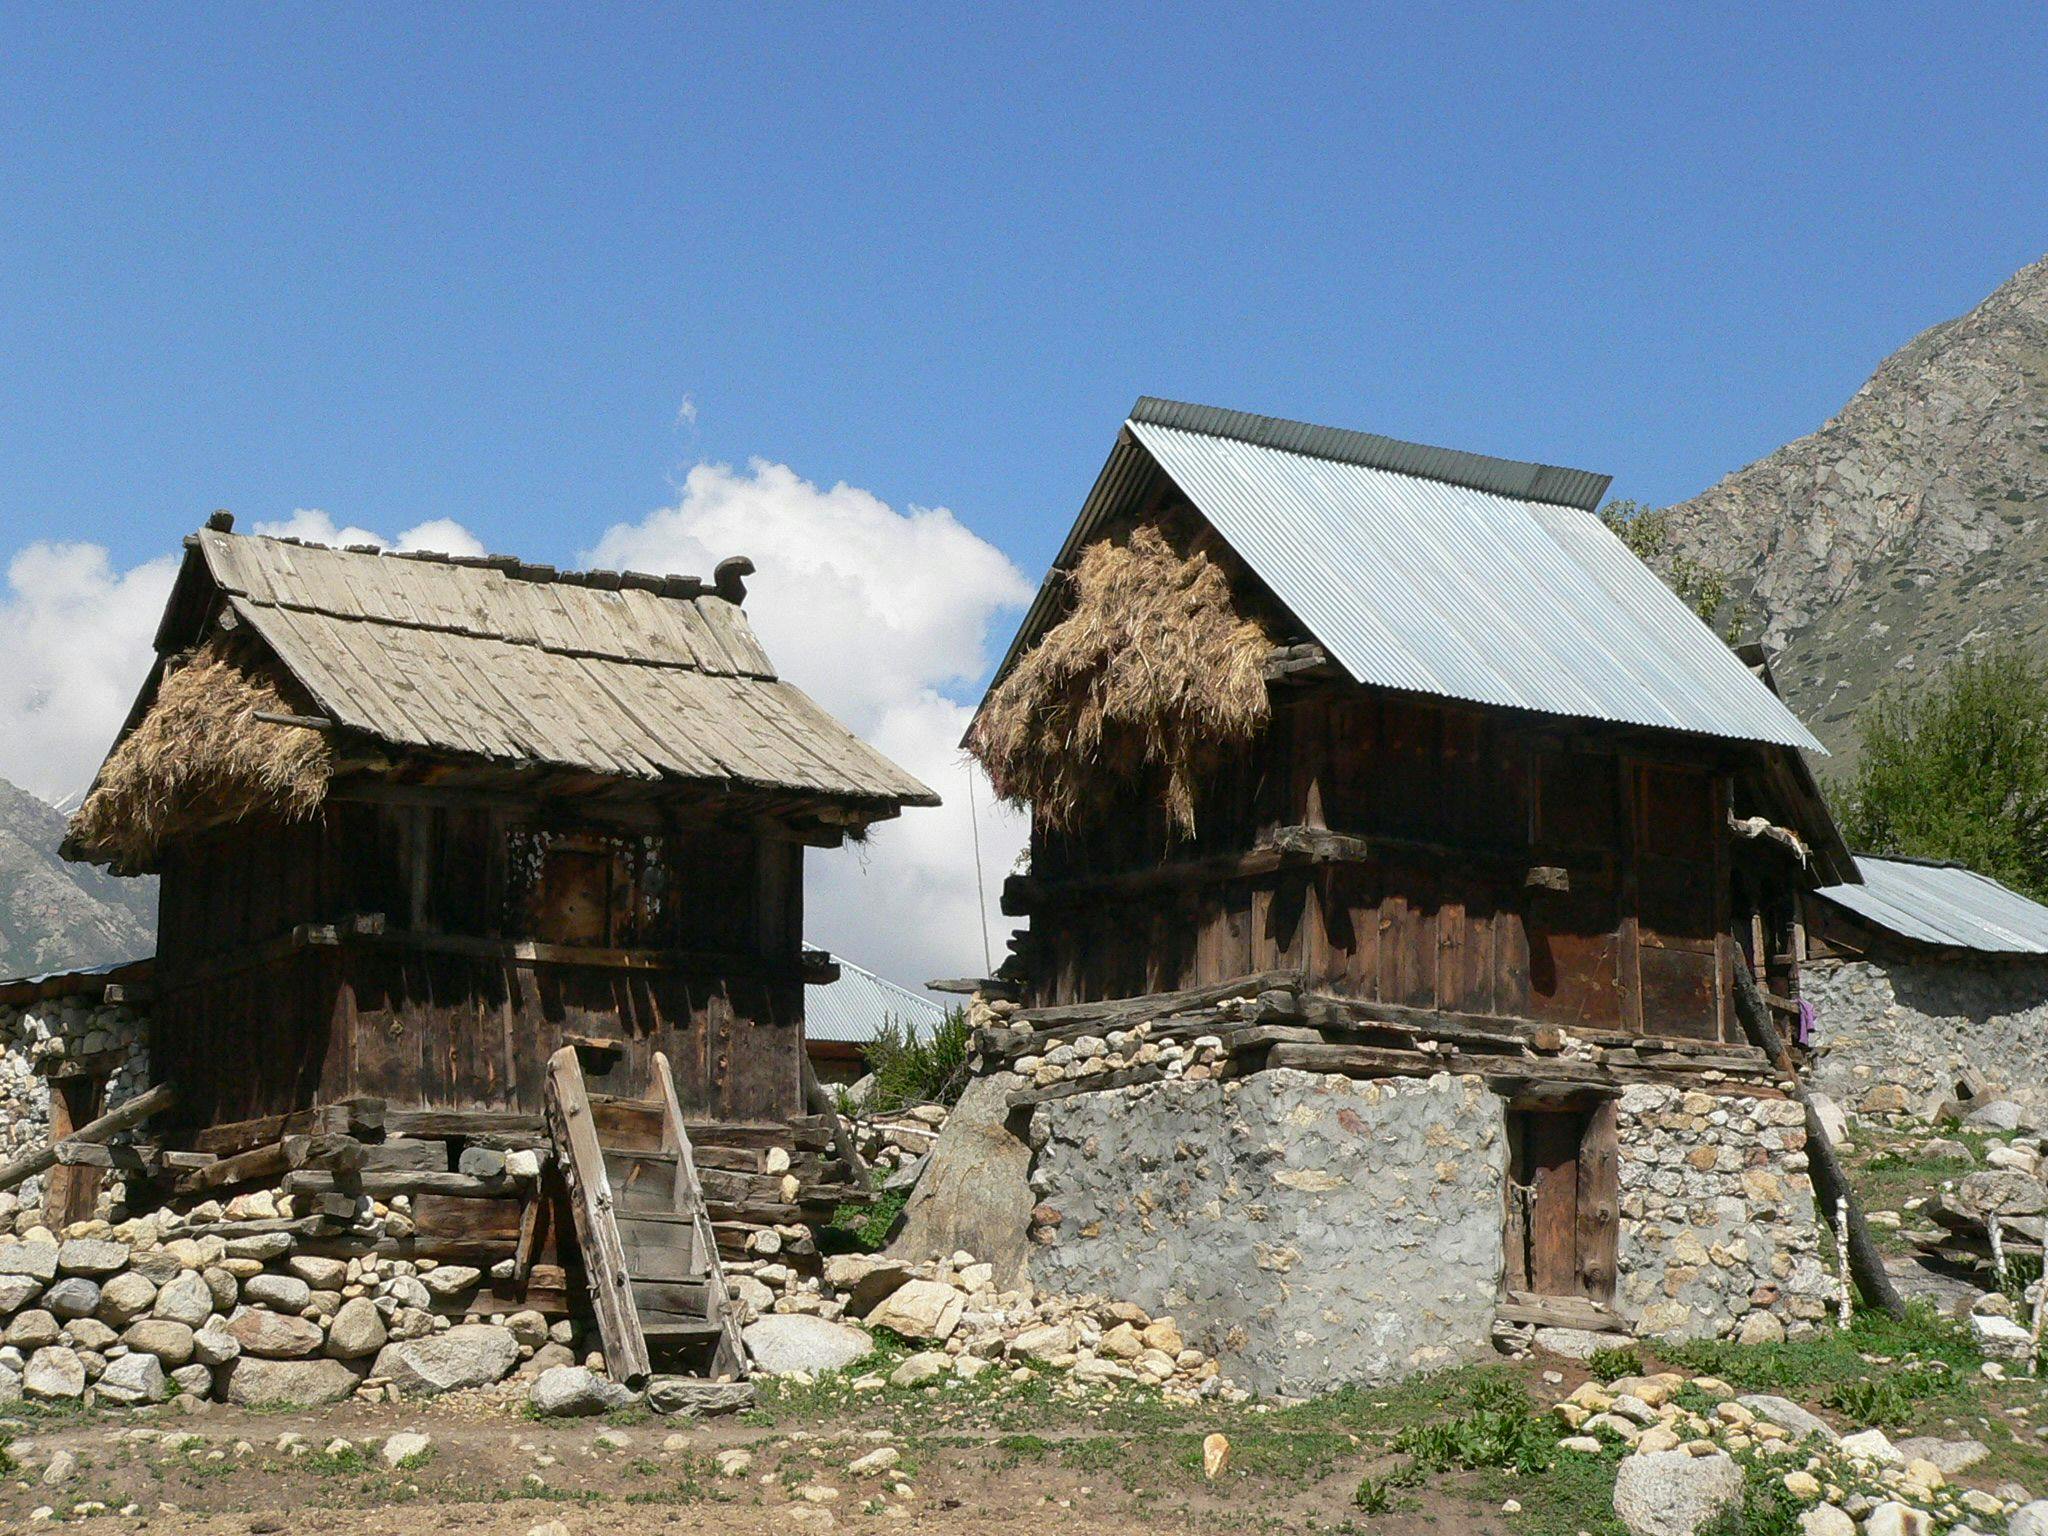 Common granary store in the village